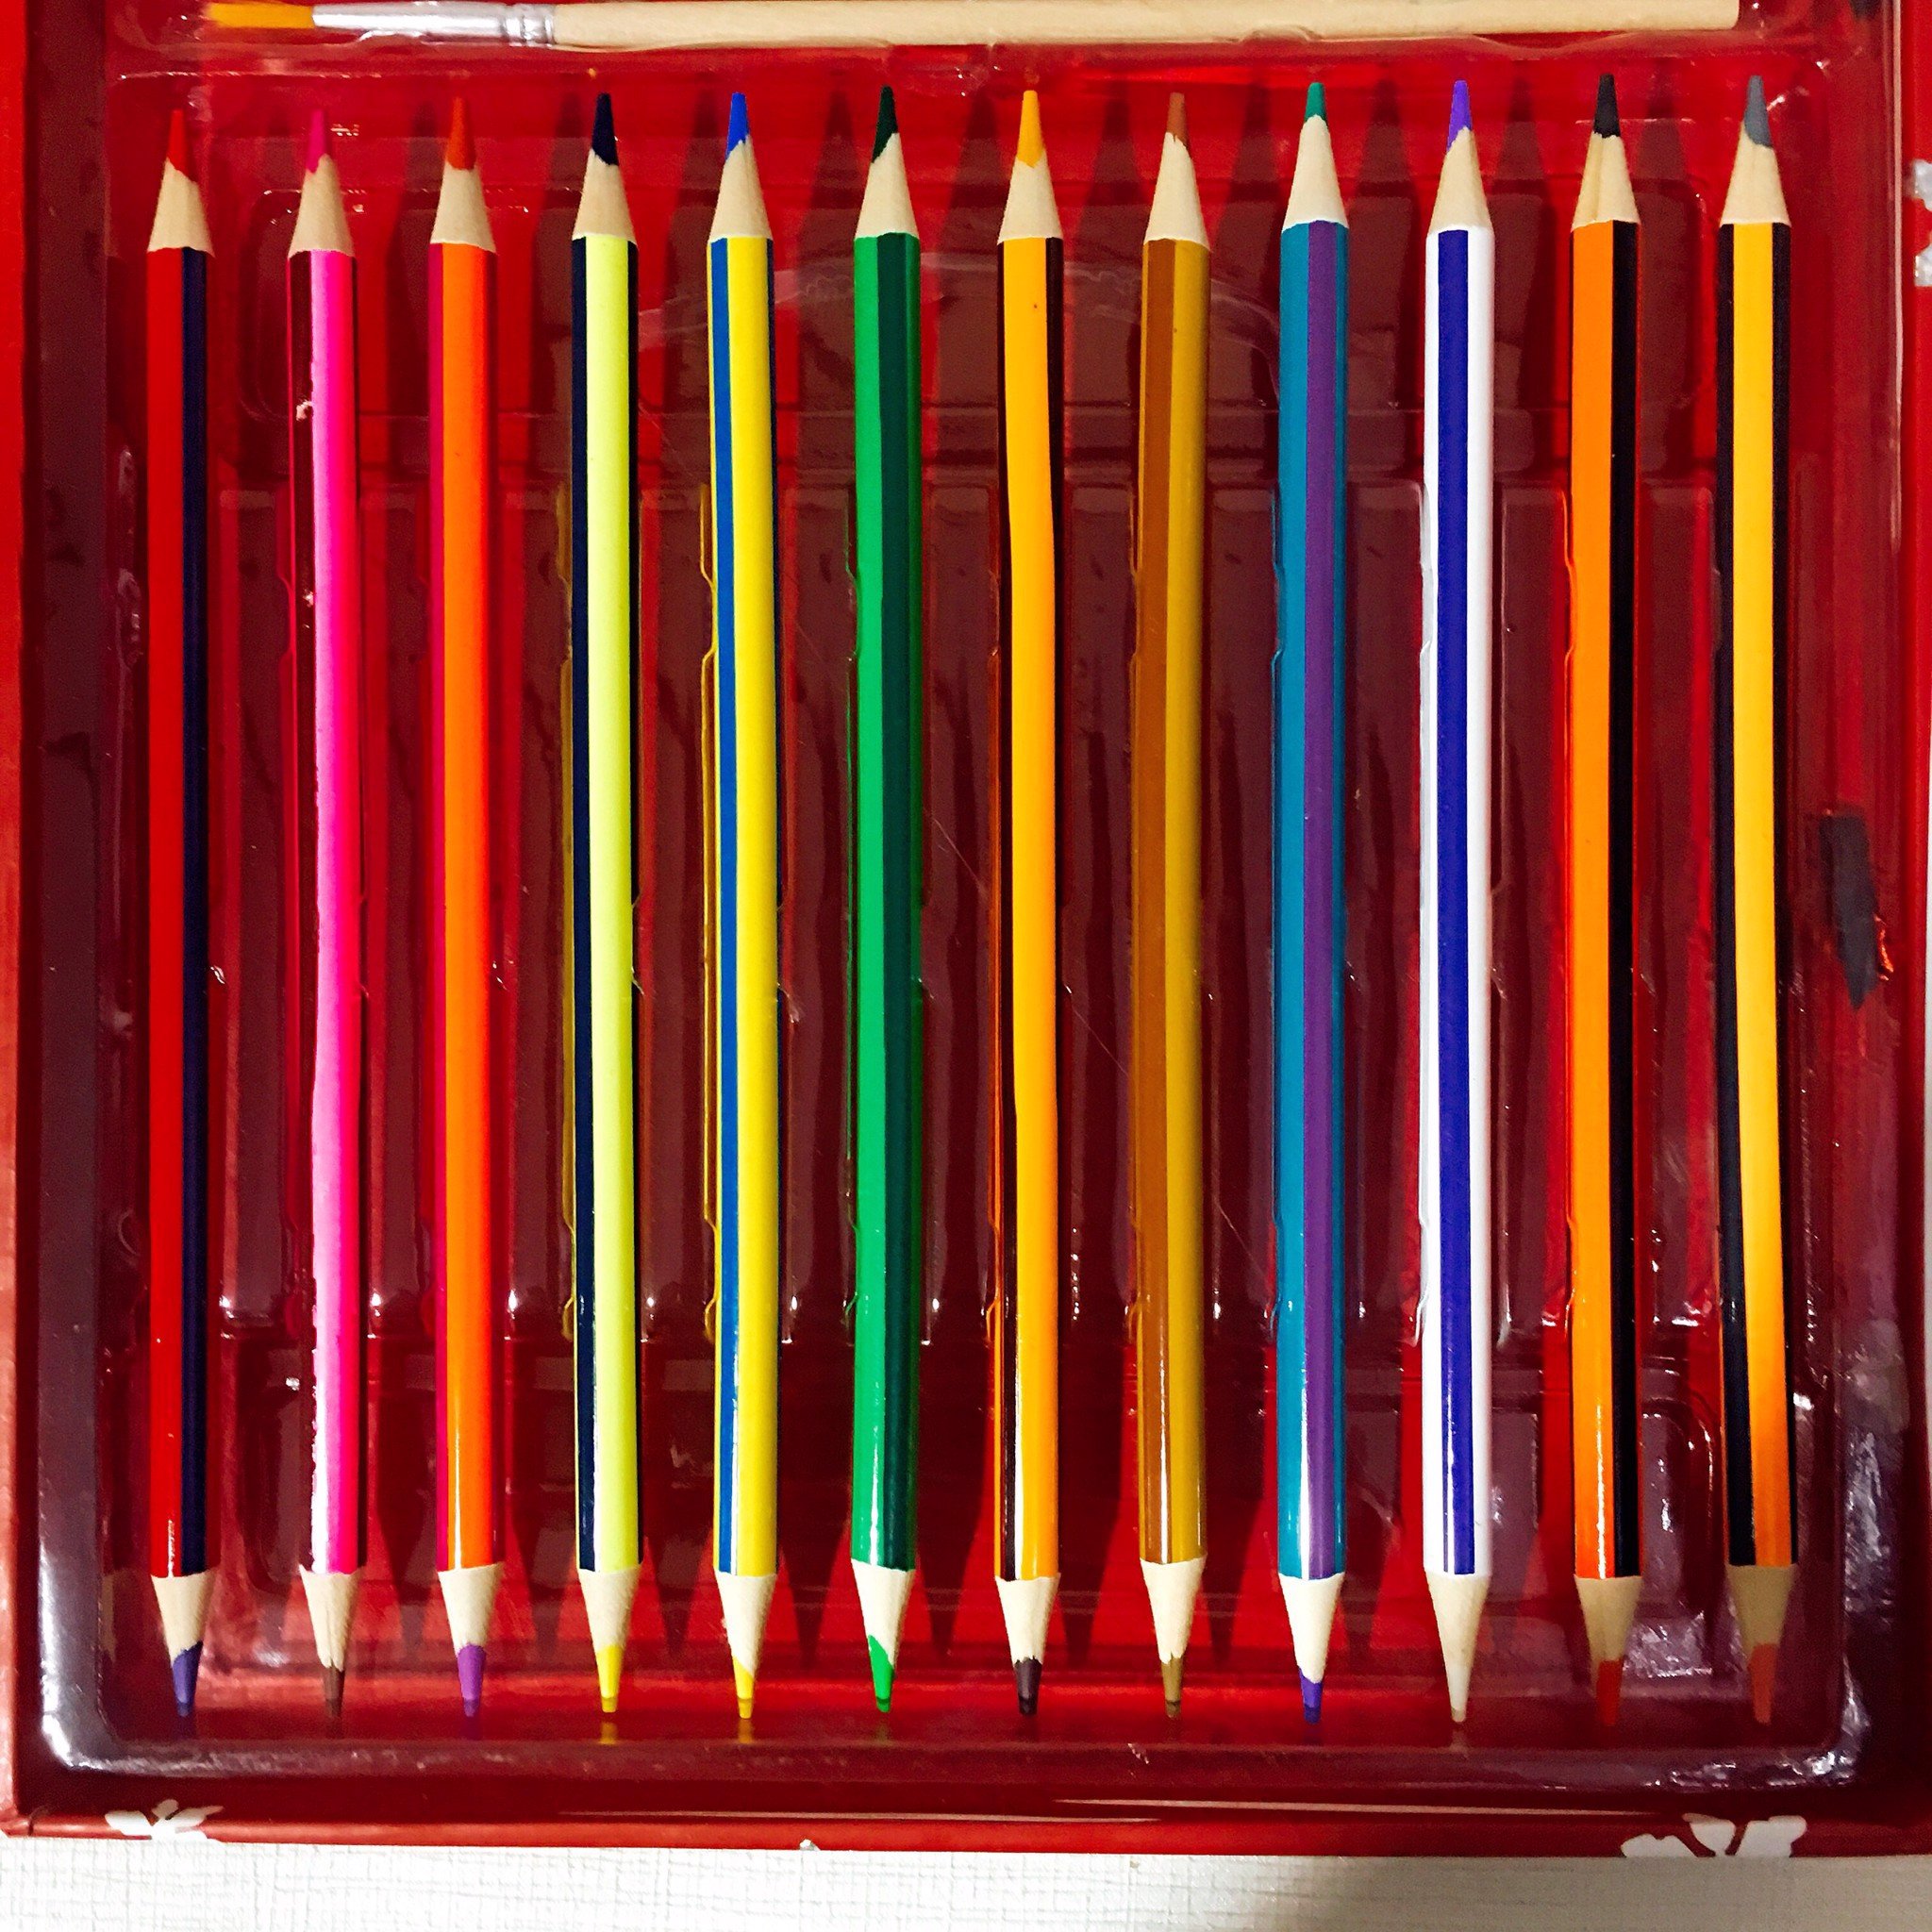 BEDDYBEAR / Bộ bút sáp - Bút chì màu - Bút màu nước / 86 món / dành cho bé từ 3 tuổi trở lên/ họa tiết xinh xắn